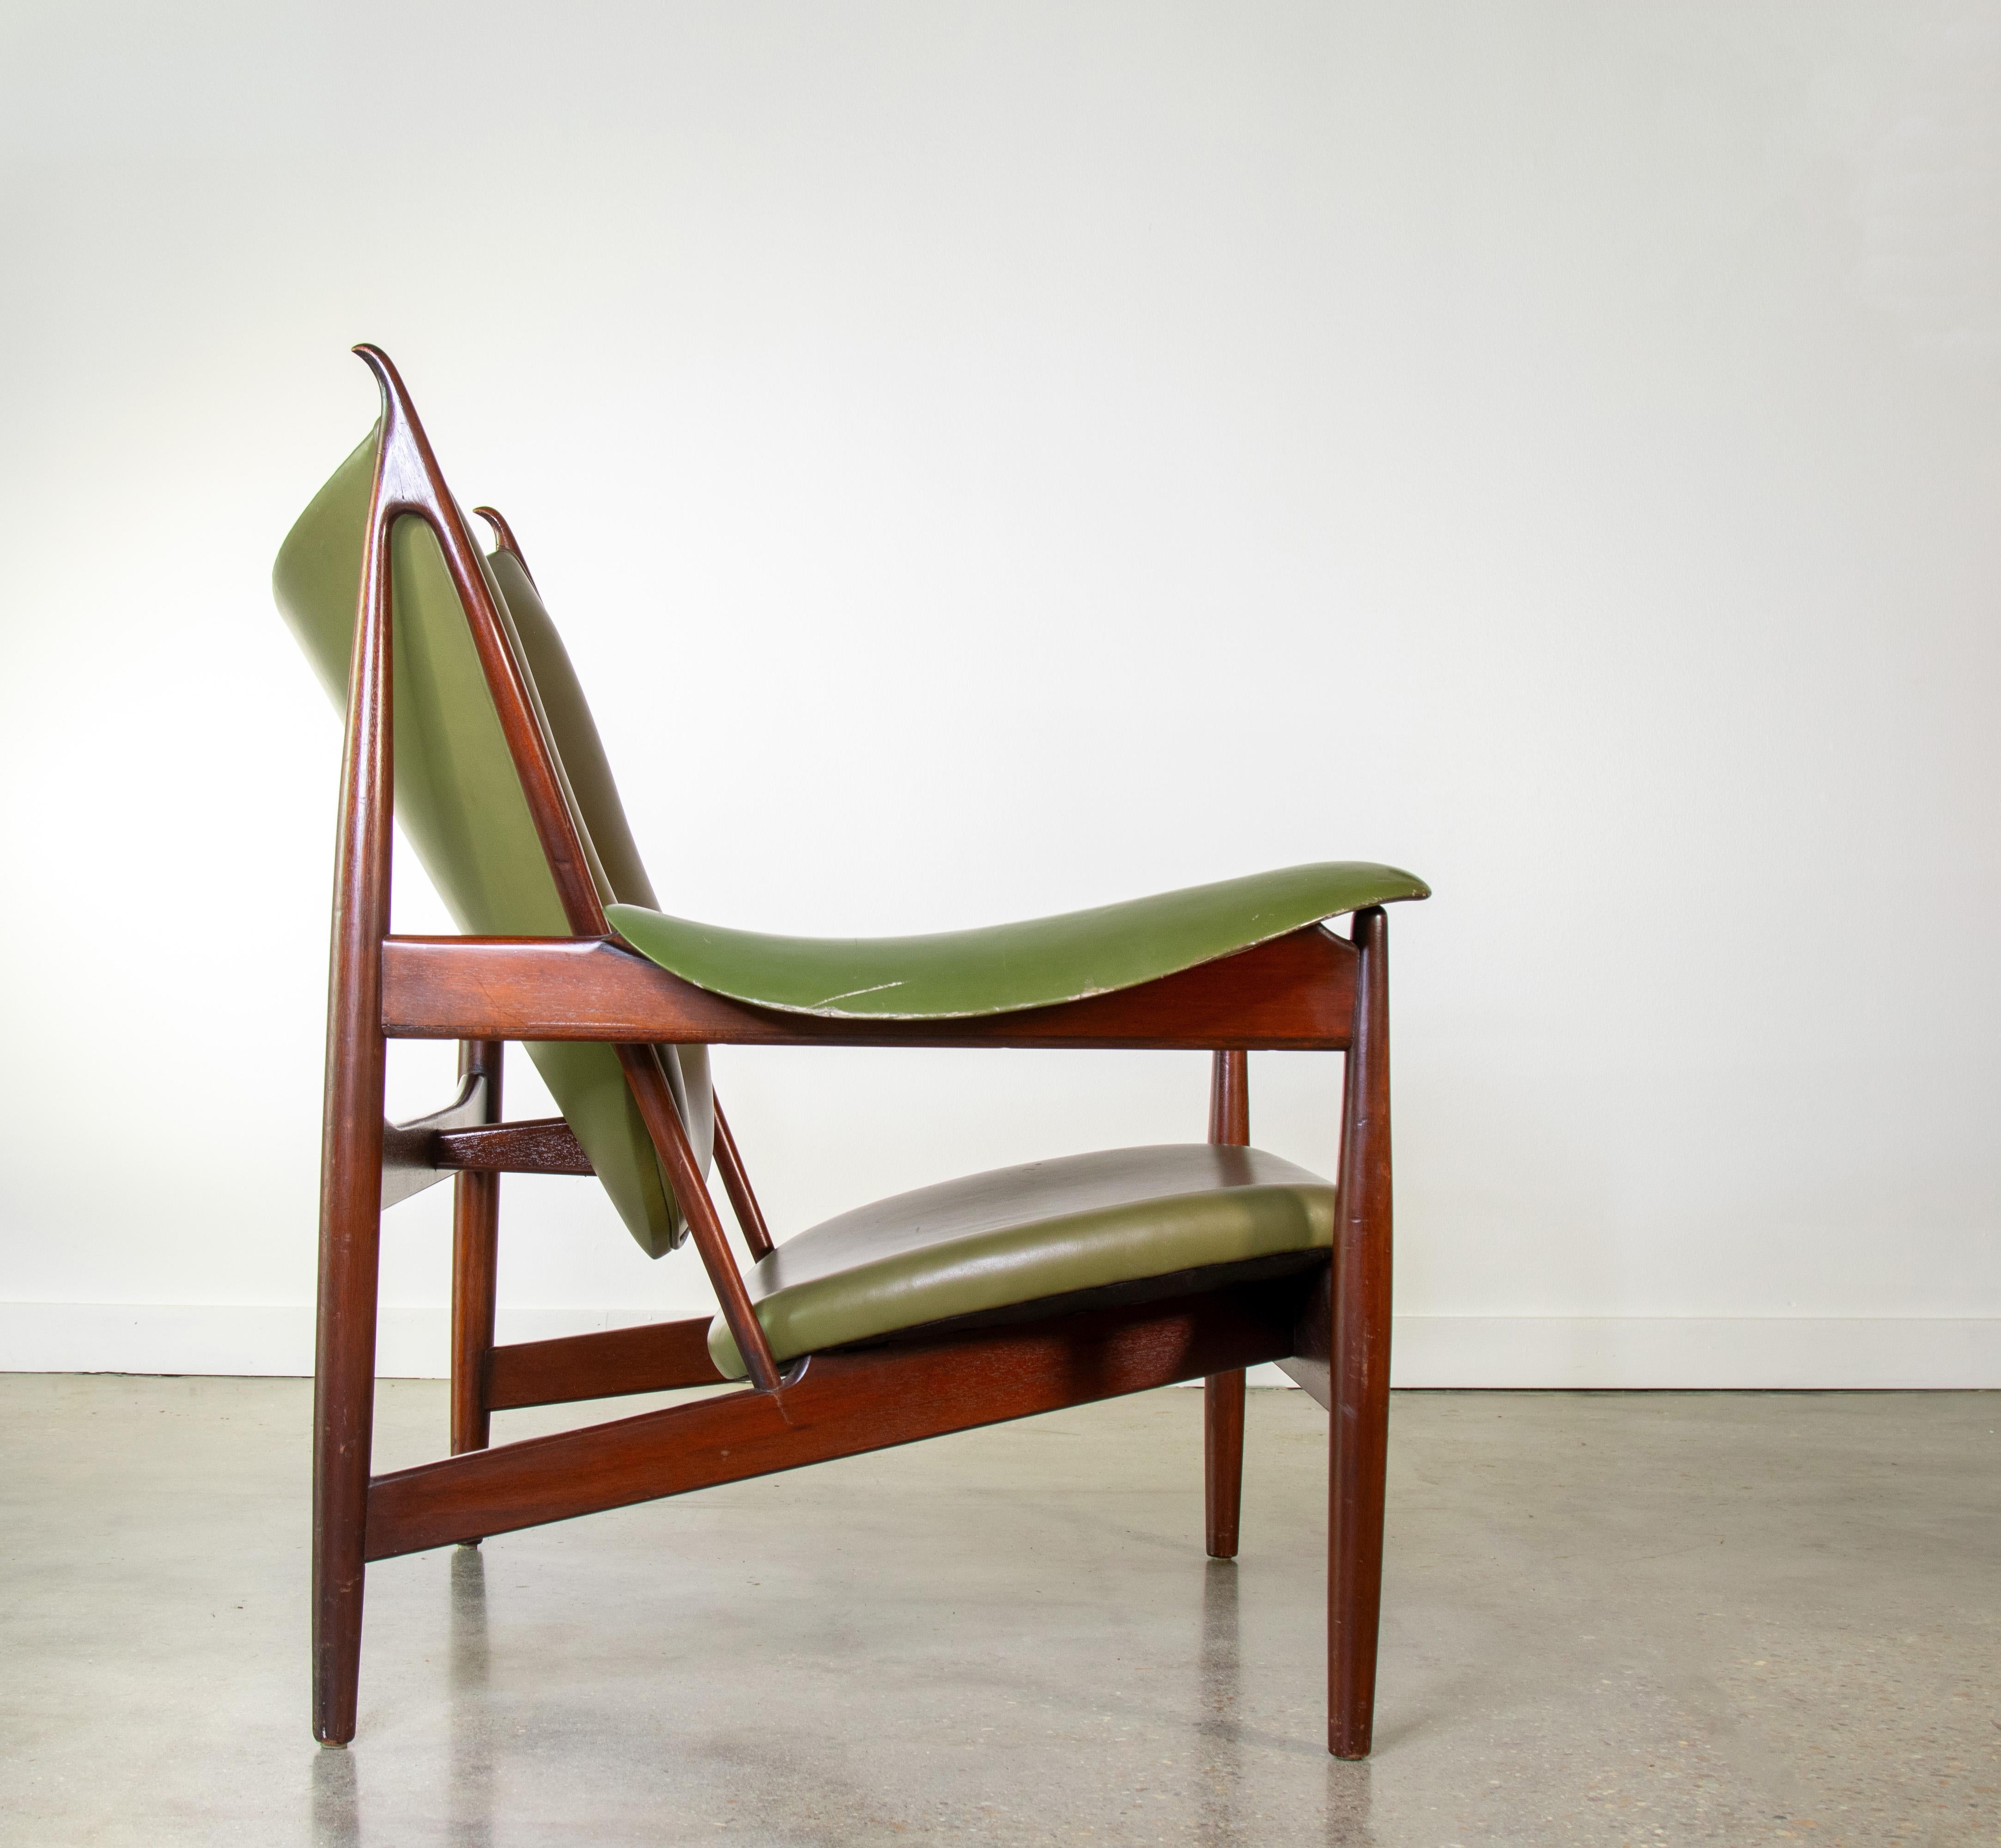 Chaise de chef en acajou et cuir vert.  Il s'agit d'un remake fidèle produit par Interior Crafts de Chicago au milieu et à la fin des années 1990.  La chaise a été fabriquée pour structure stores, une marque de vêtements américaine.  Interior Crafts